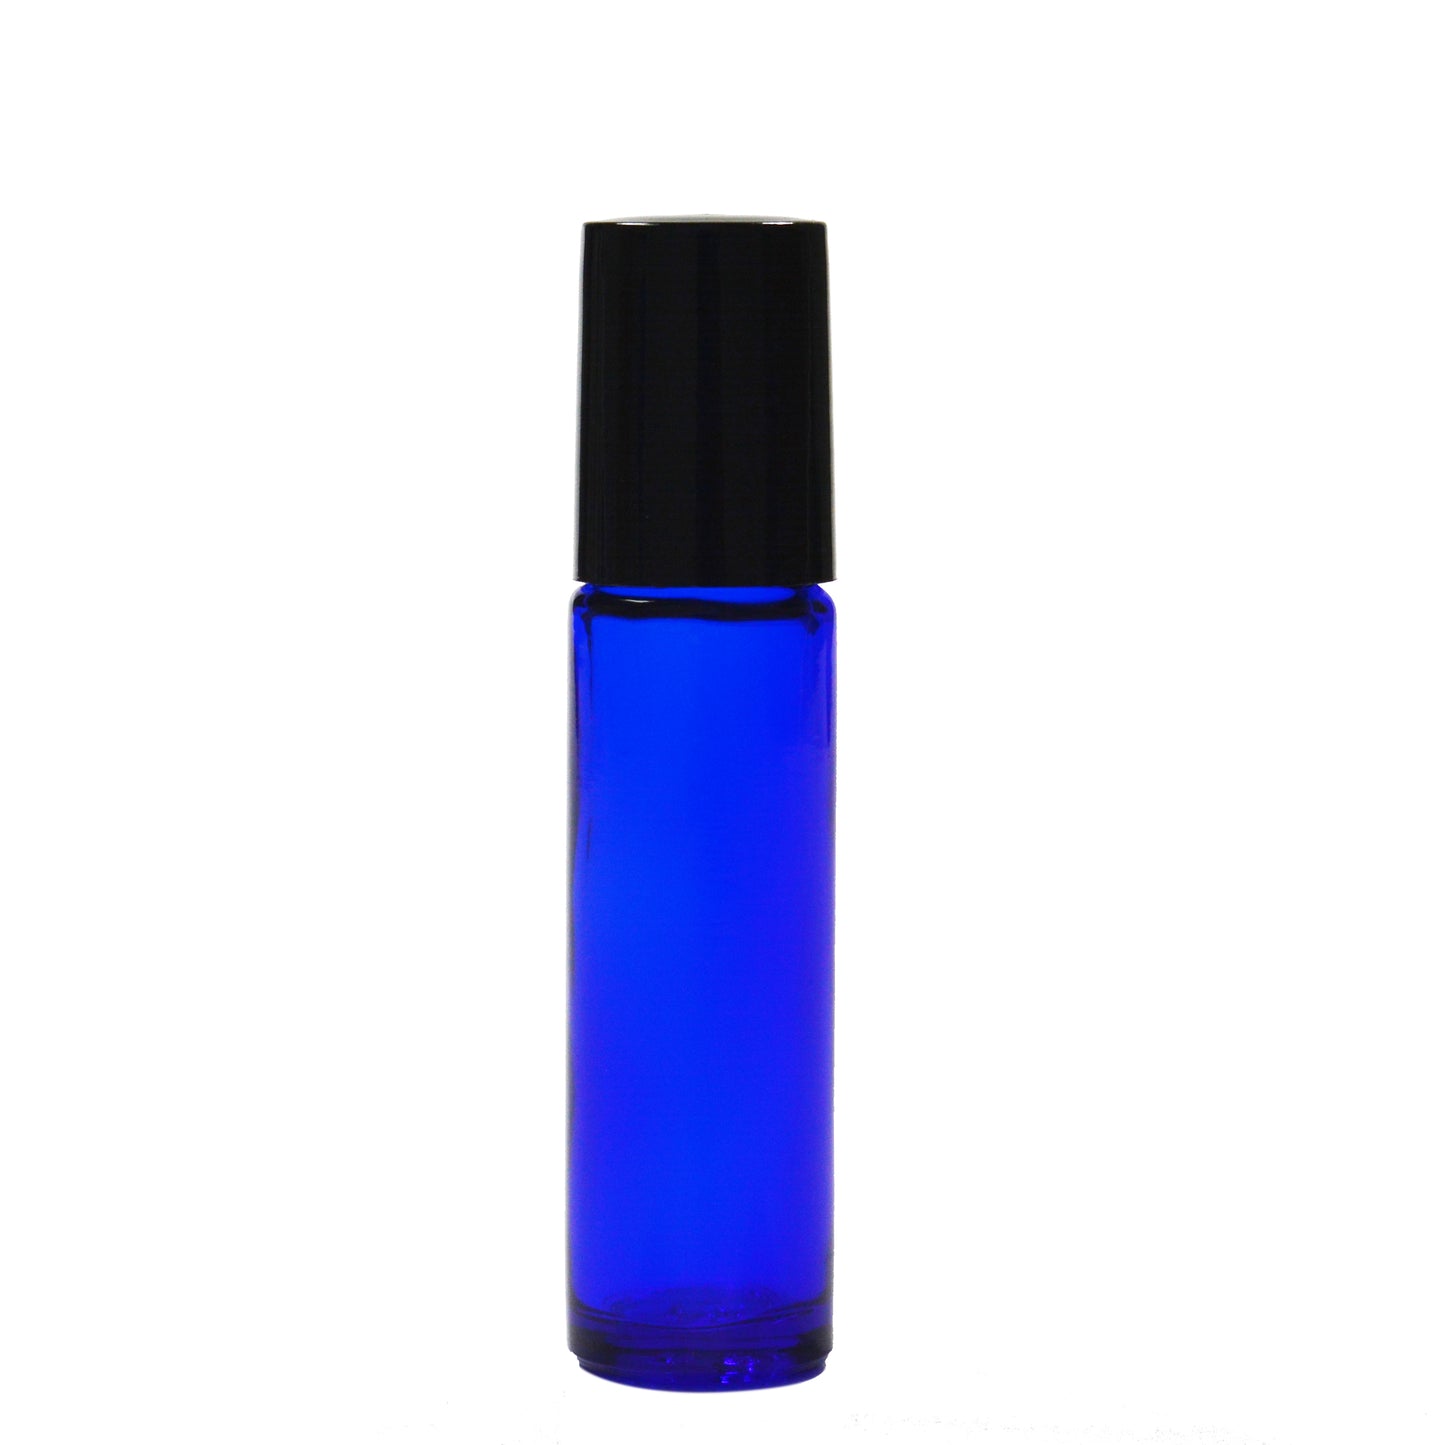 Roll On Bottle 10ml - Blue